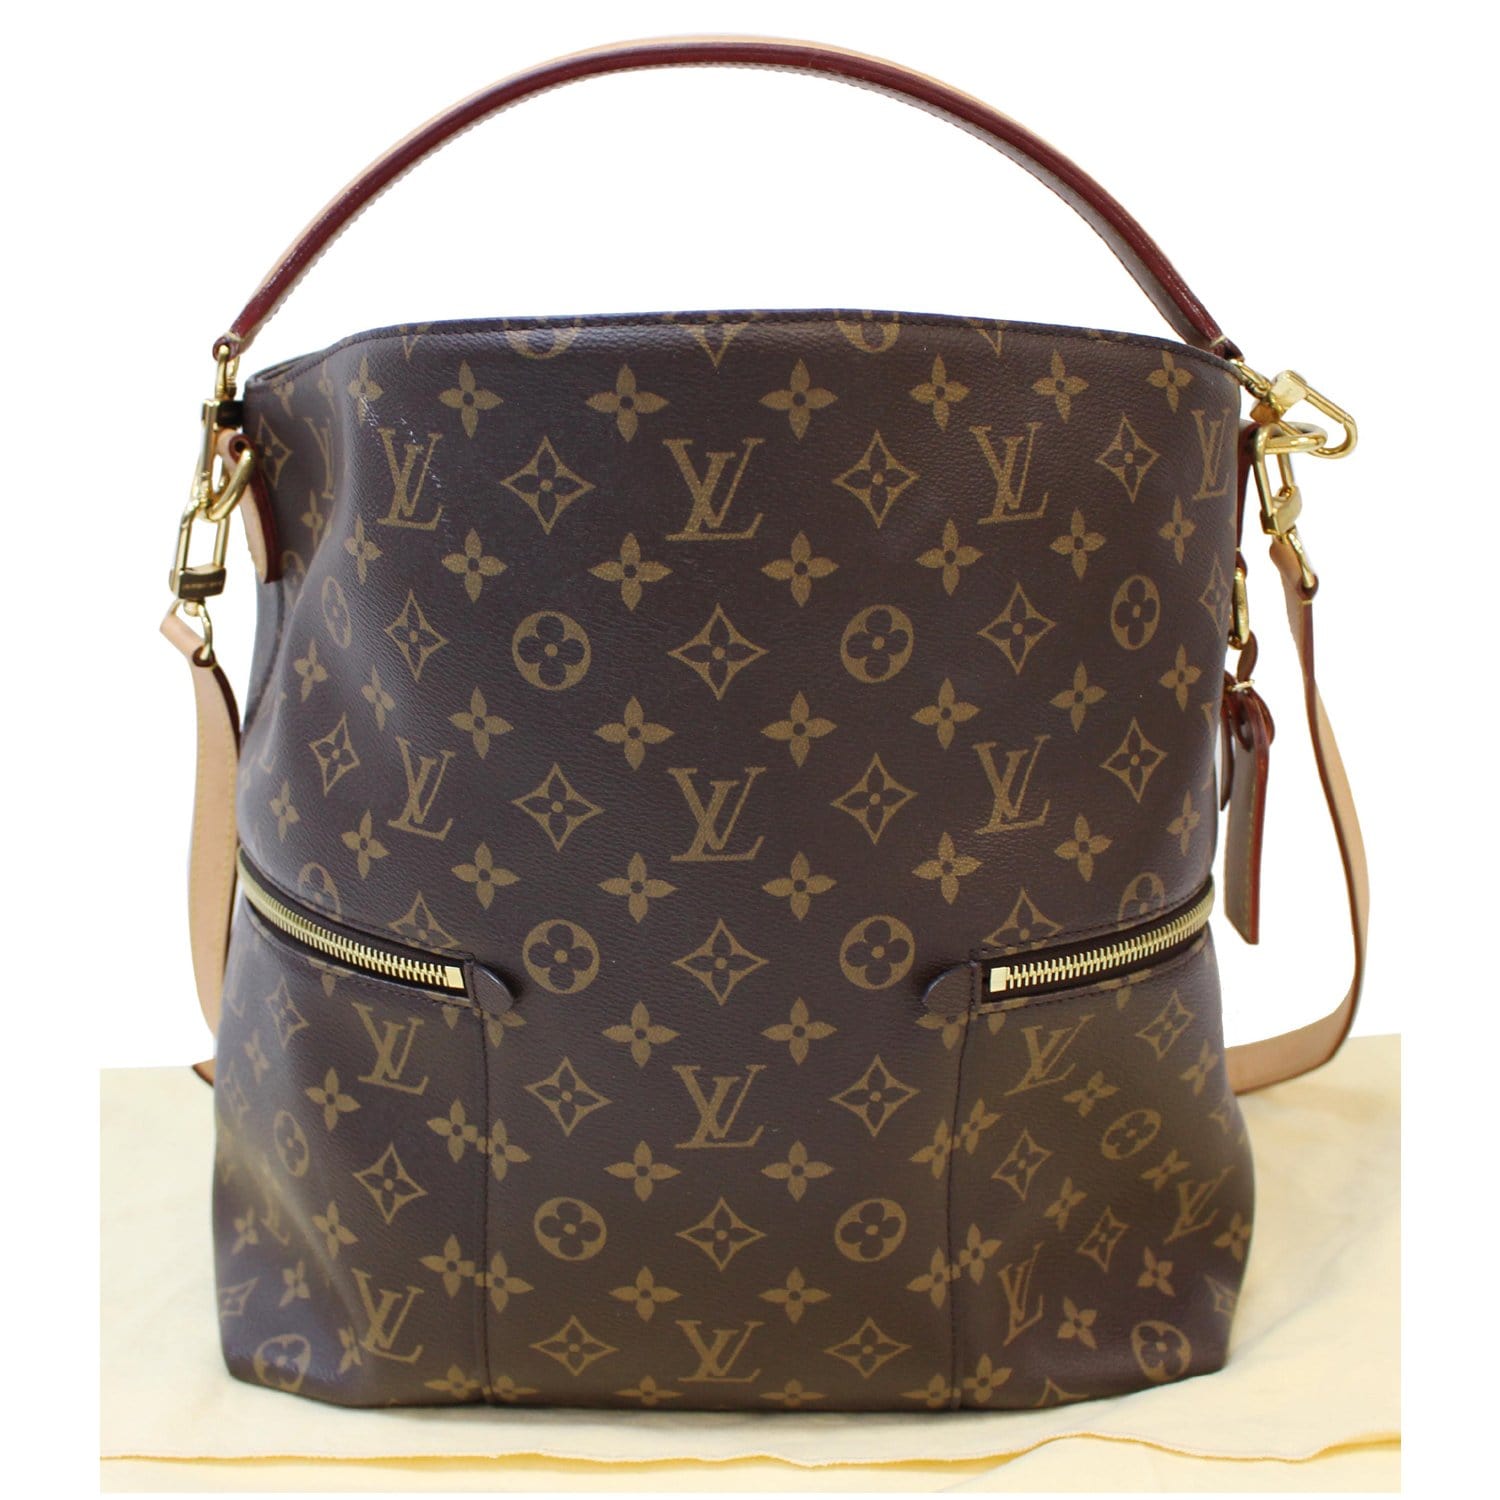 Louis Vuitton Melie Shoulder Bags for Women